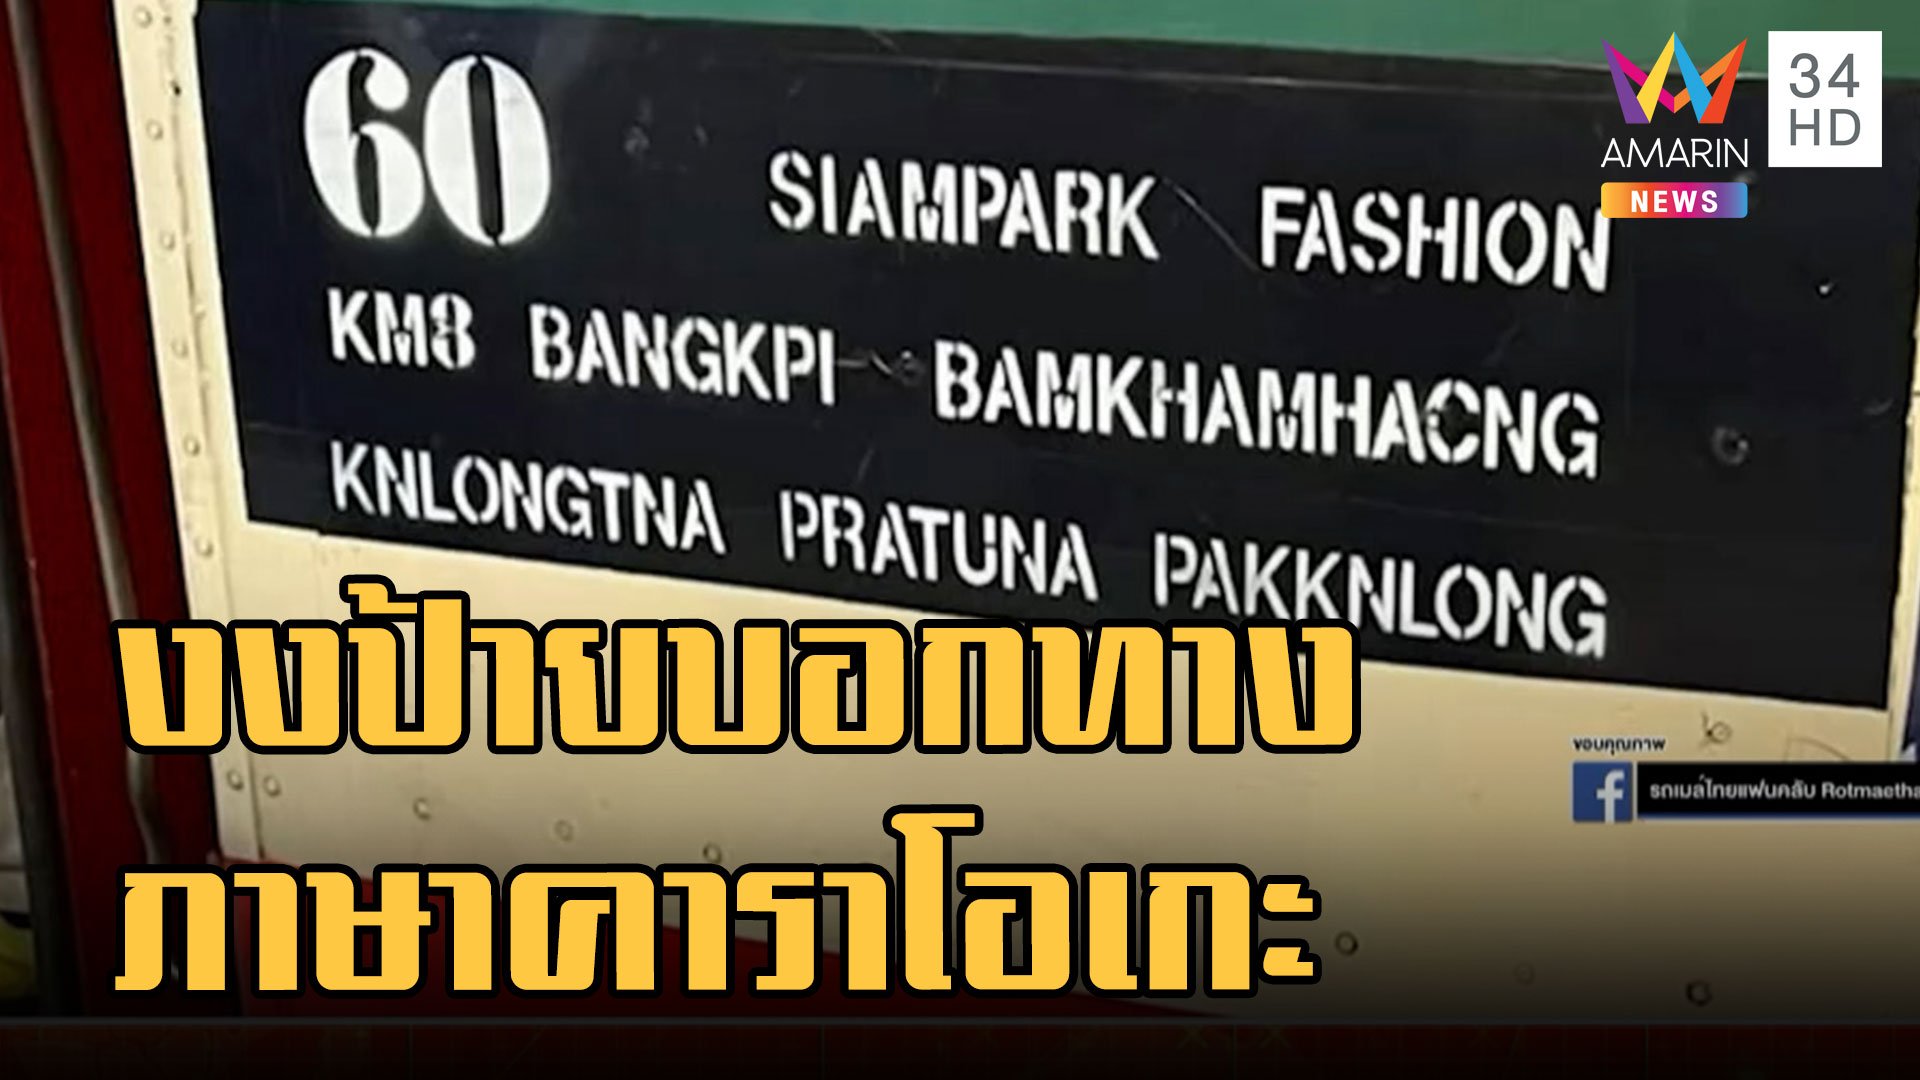 ชาวเน็ตงงหนัก ป้ายบอกทางรถเมล์คนไทยยังงงต่างชาติก็ไม่เหลือ | ข่าวอรุณอมรินทร์ | 20 ก.ย. 65 | AMARIN TVHD34